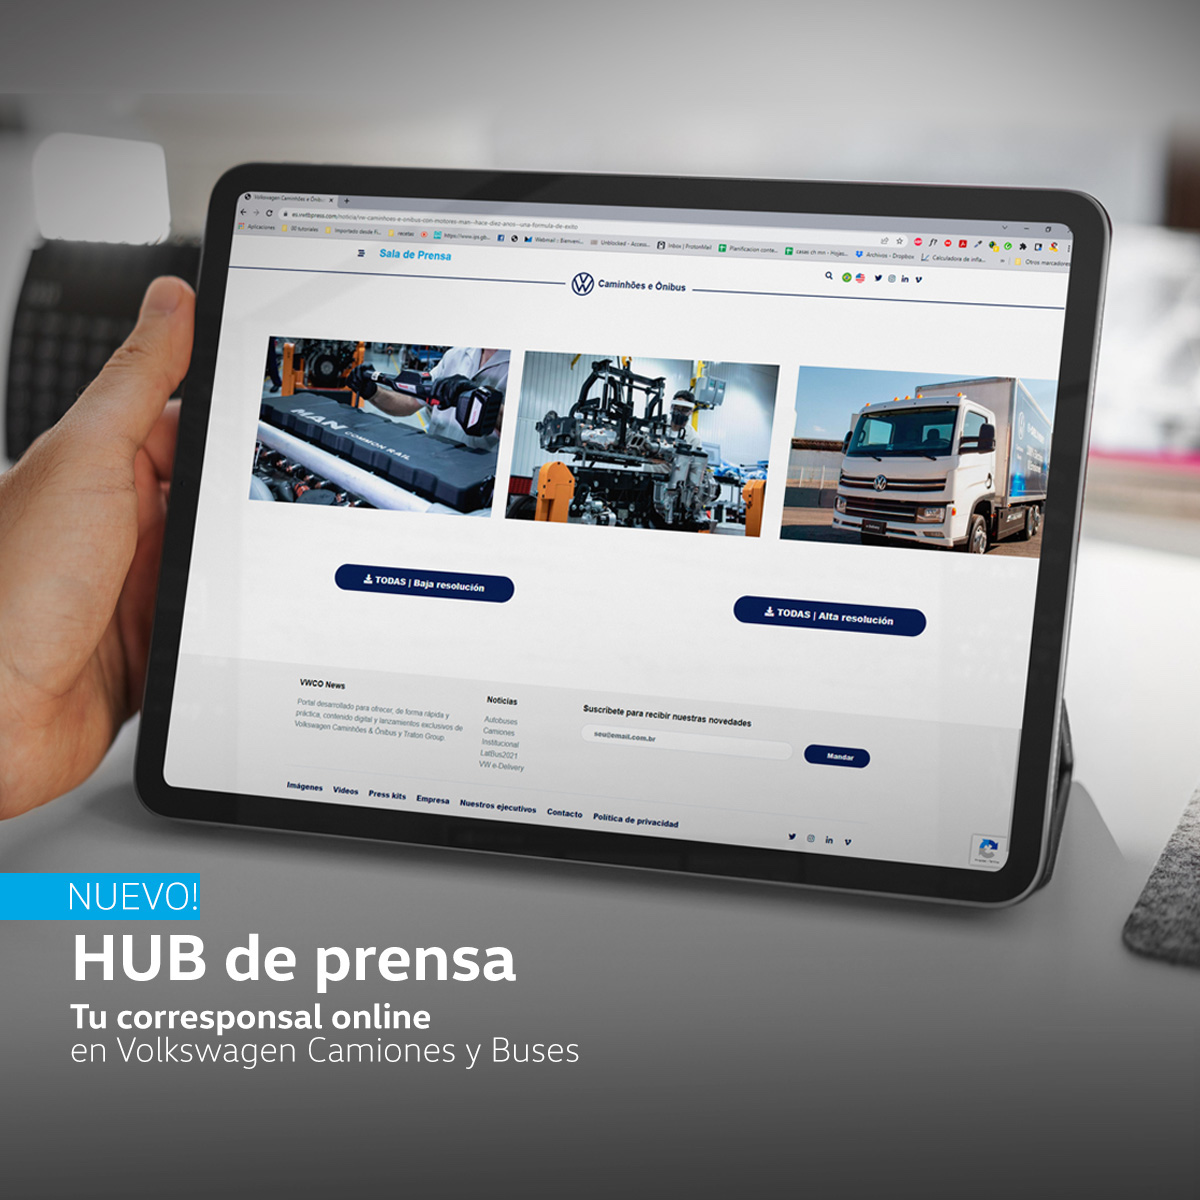 Volkswagen Camiones y Buses lanza su Hub de Prensa.